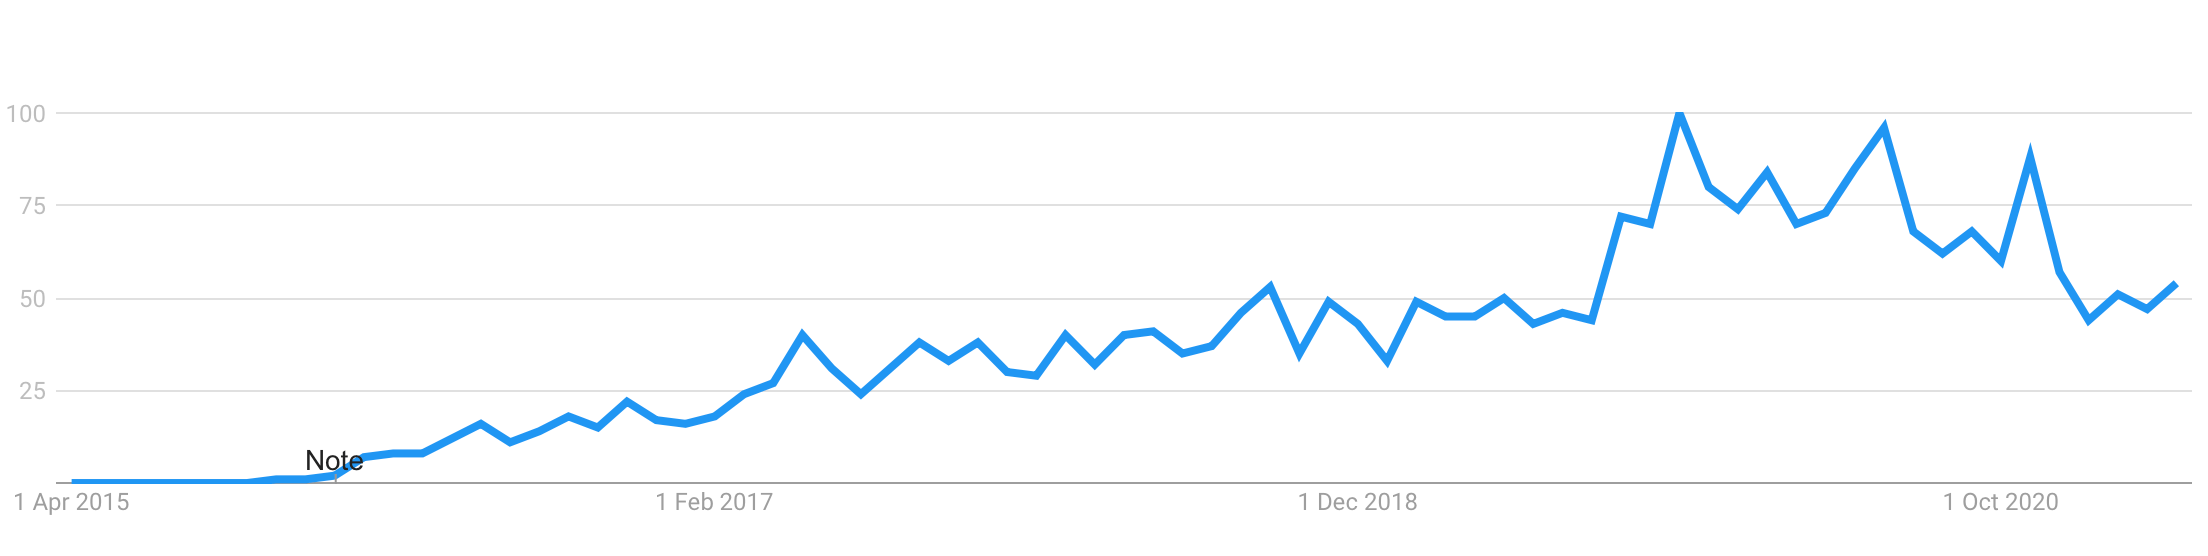 Na-kd trend i Google i Sverige - allt fler antal sökningar